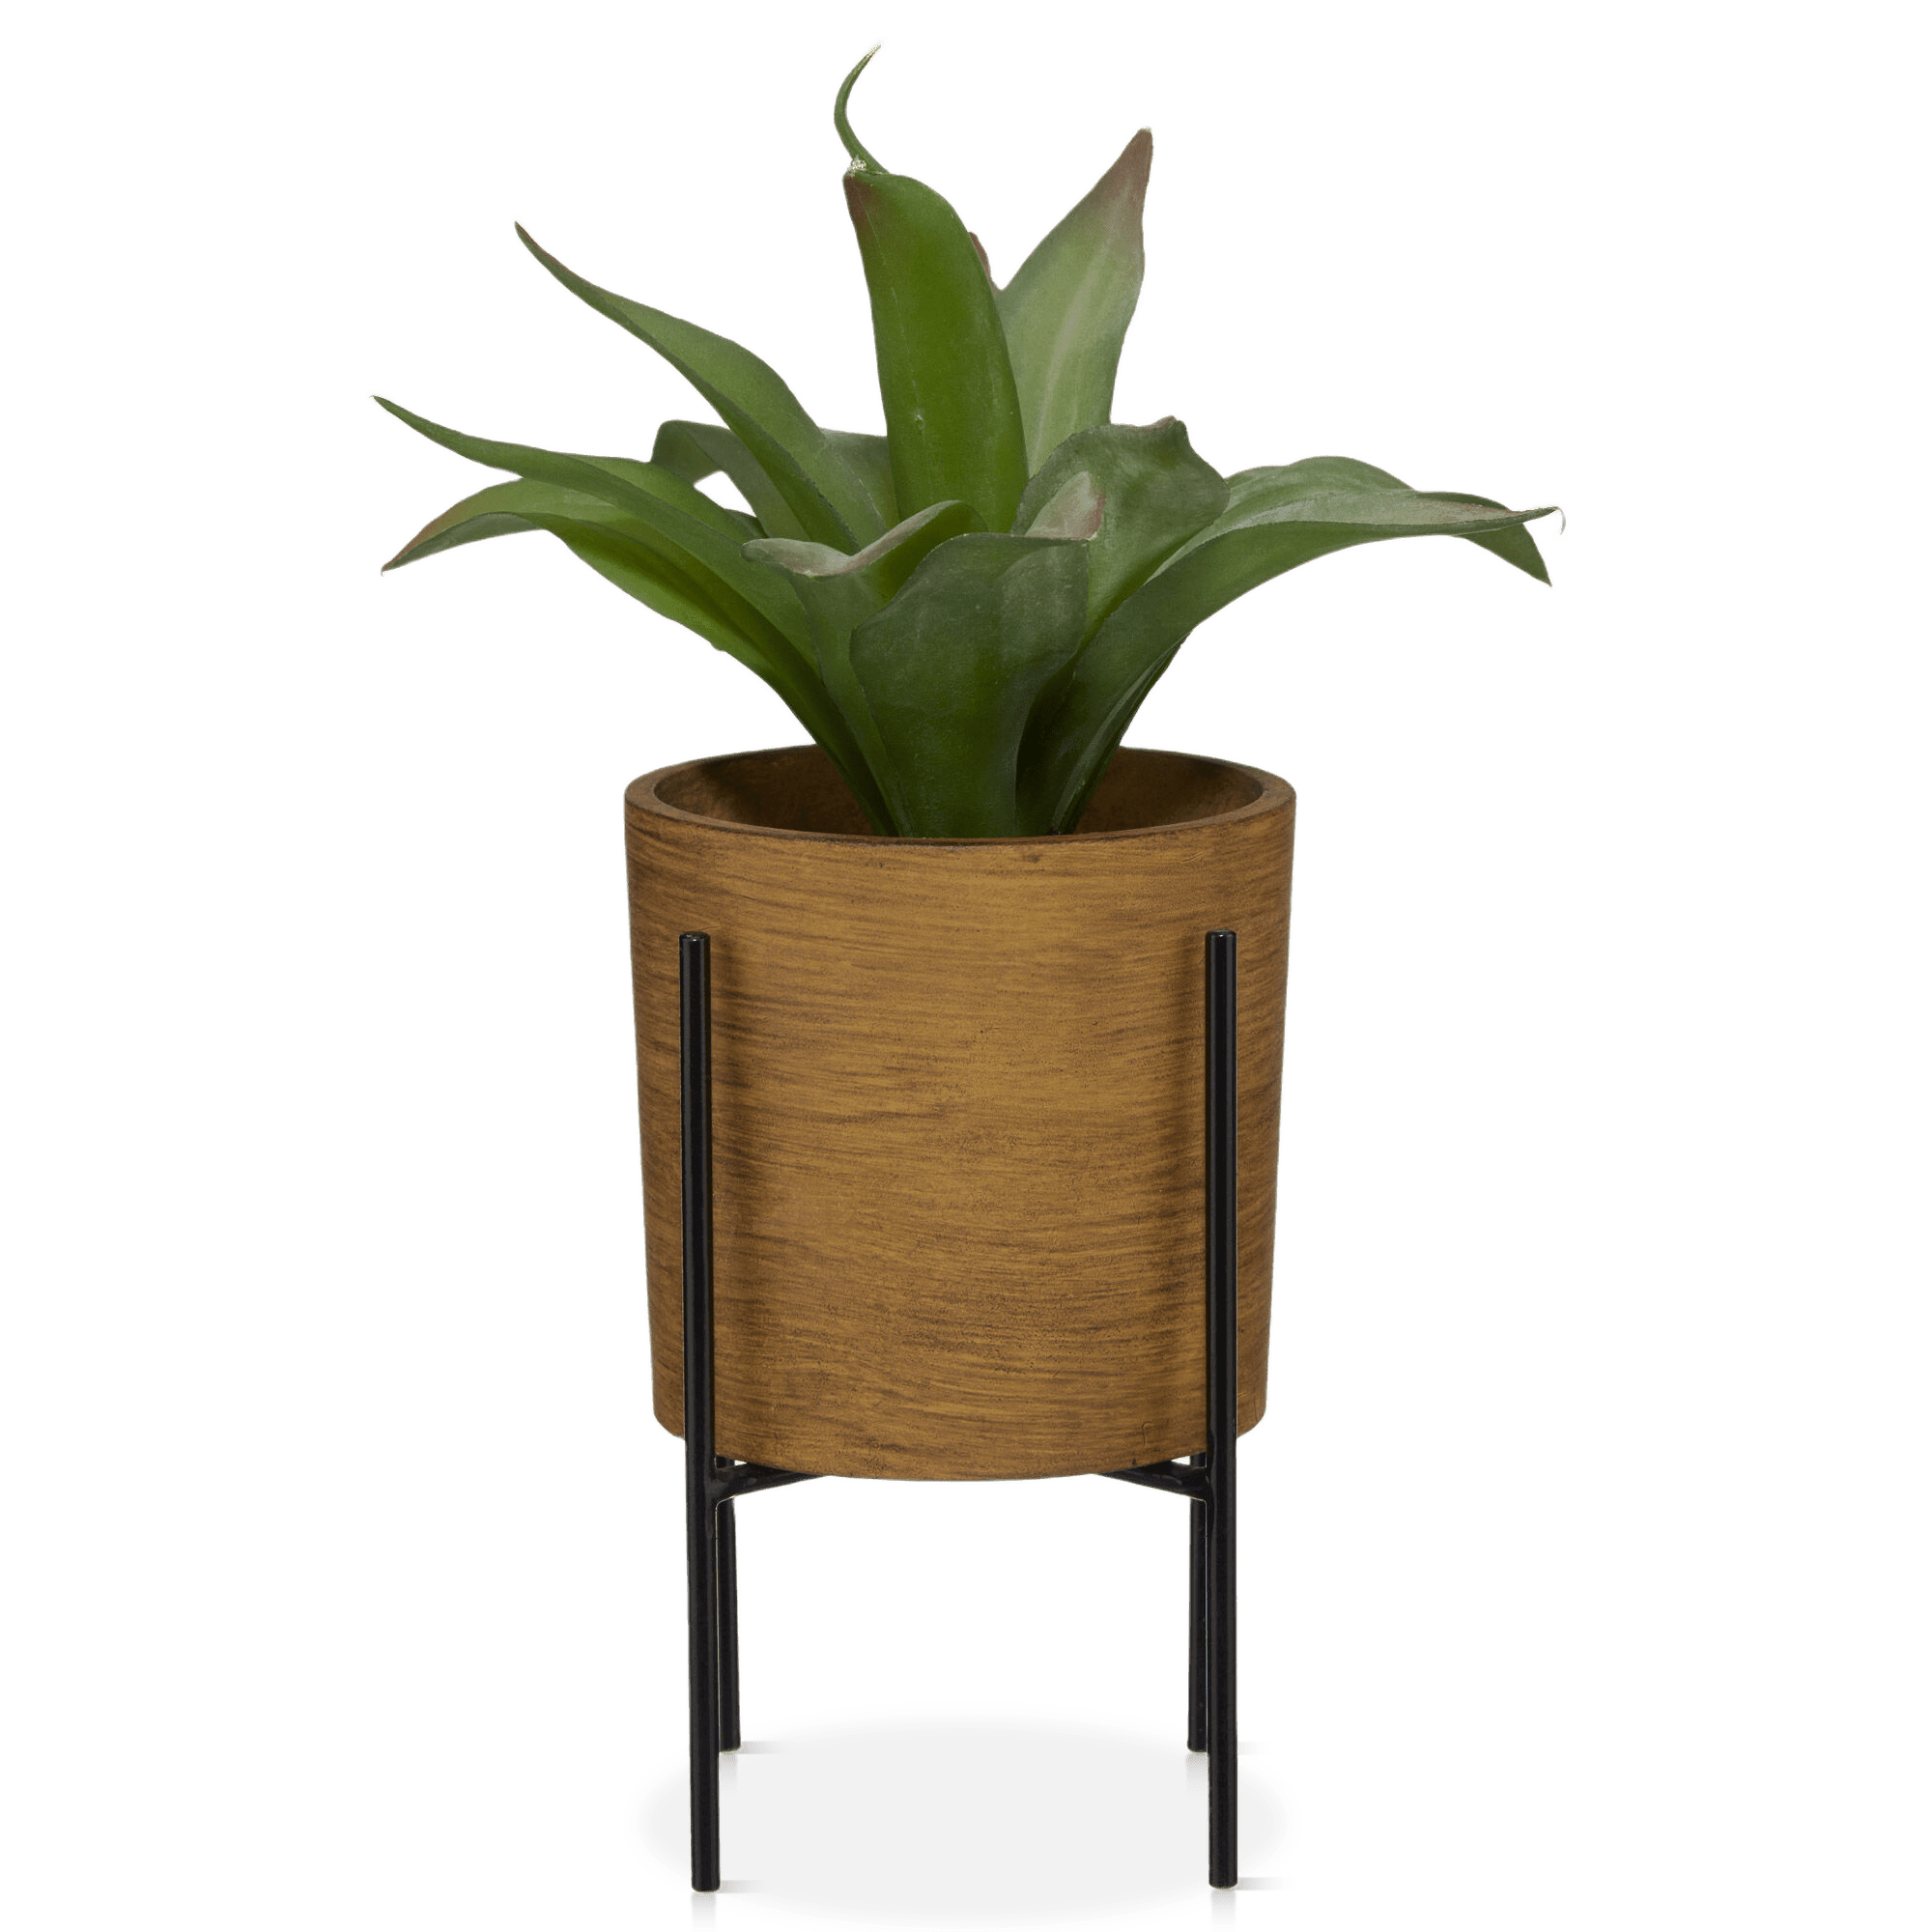 Plante en pot sur support métallique